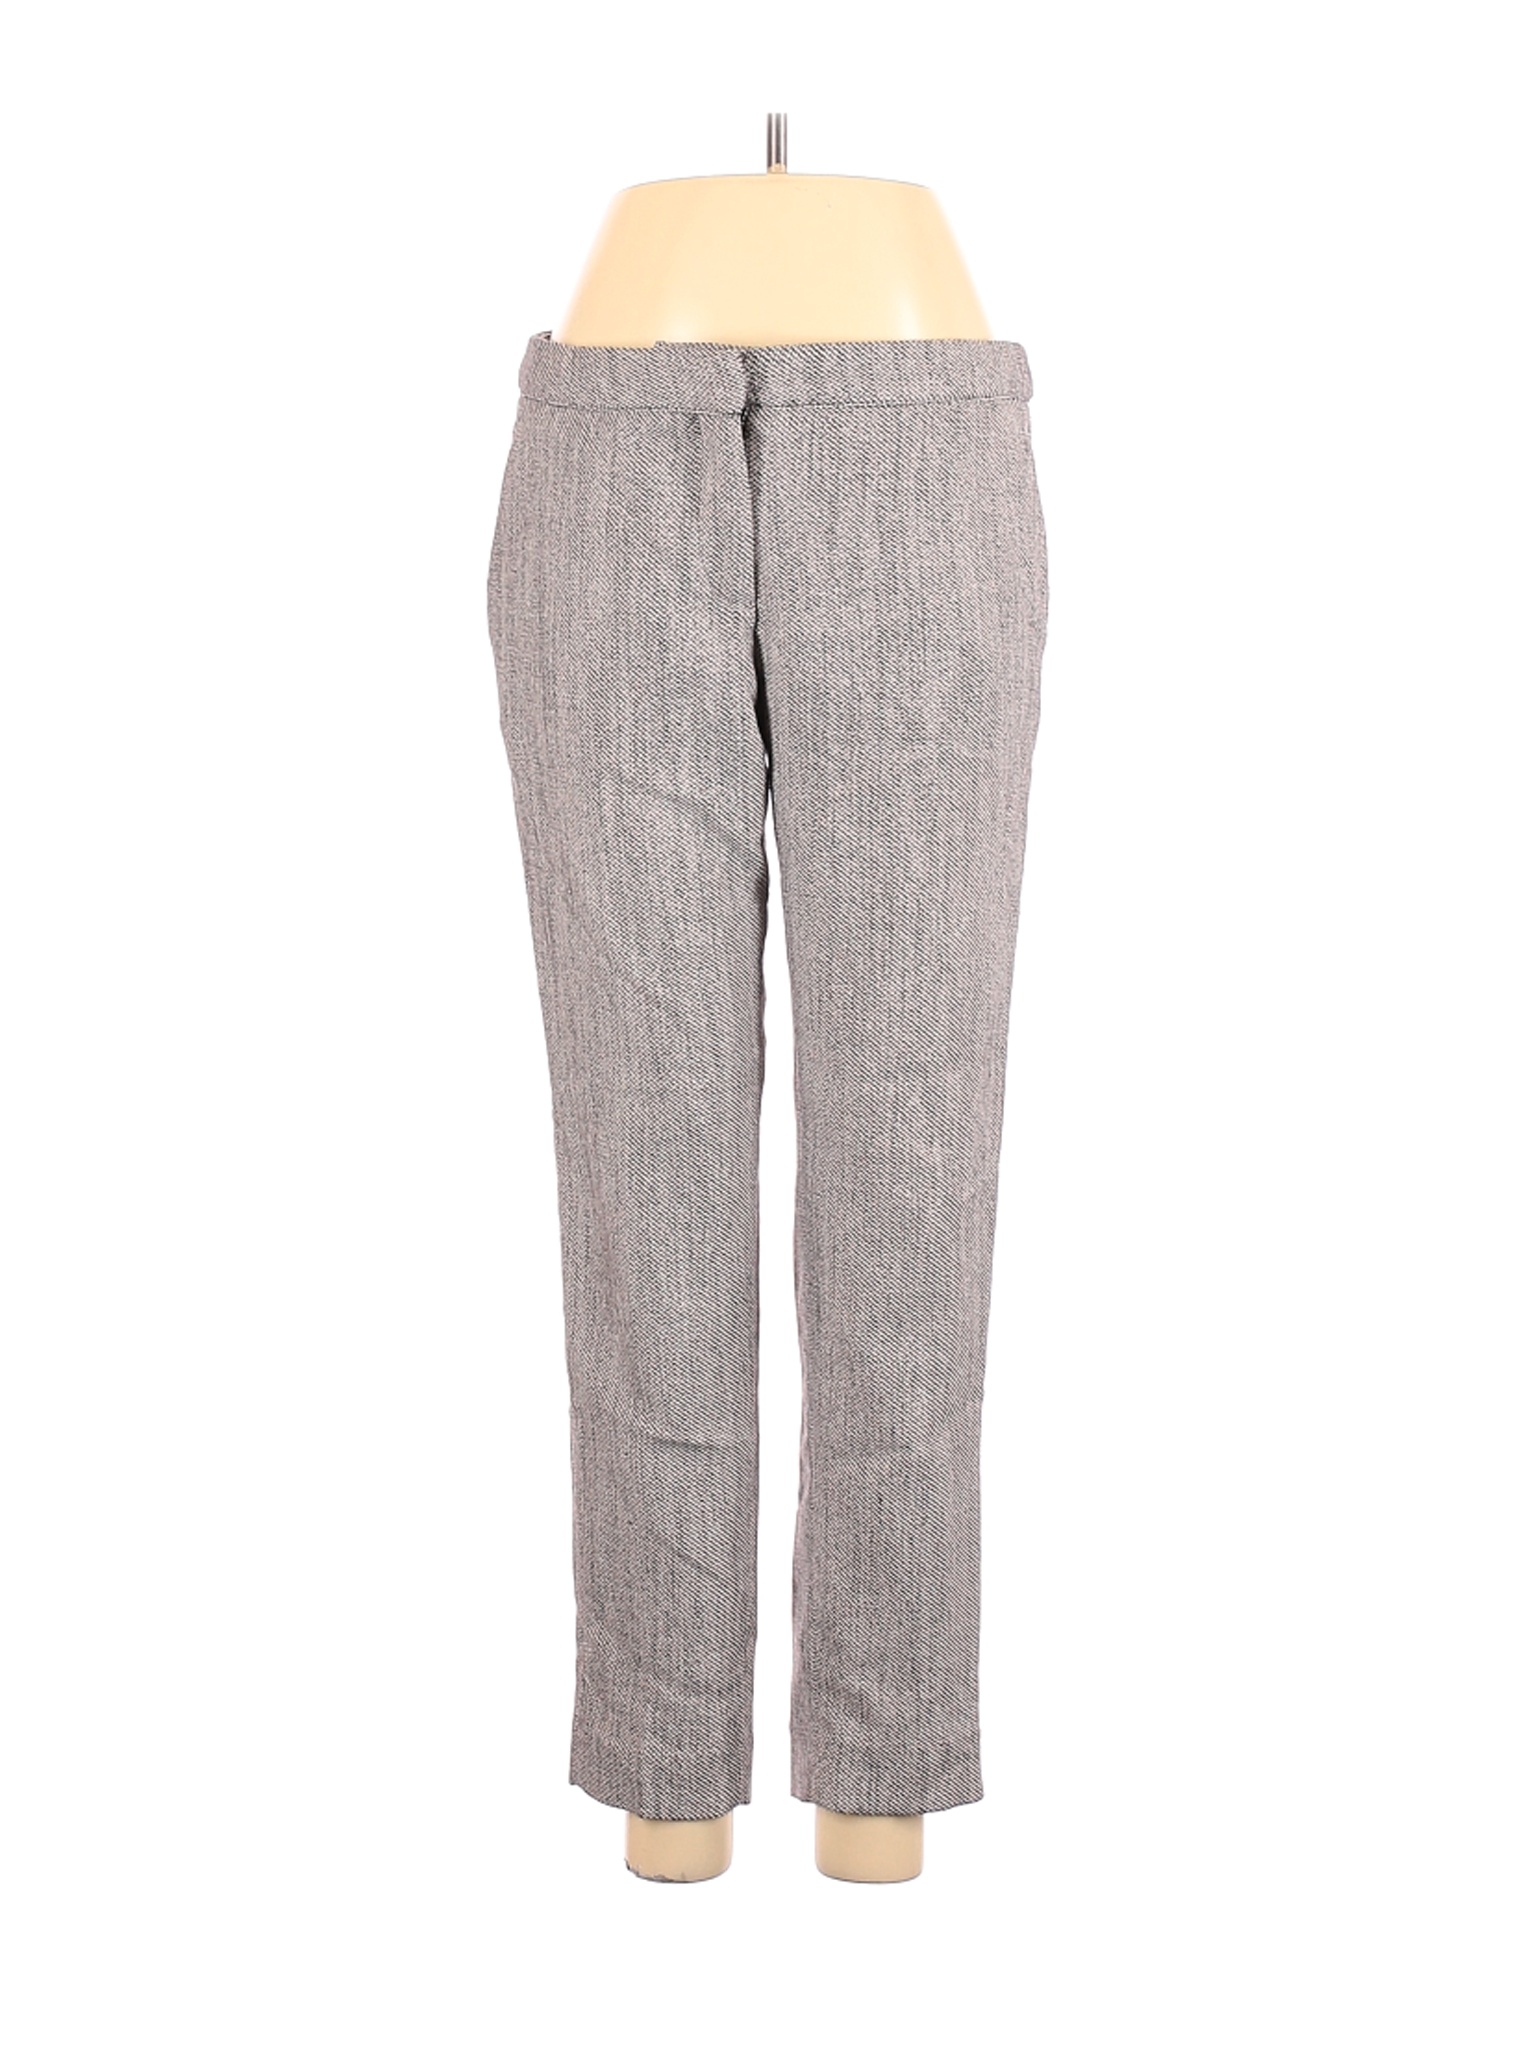 H&M Women Gray Dress Pants 8 | eBay